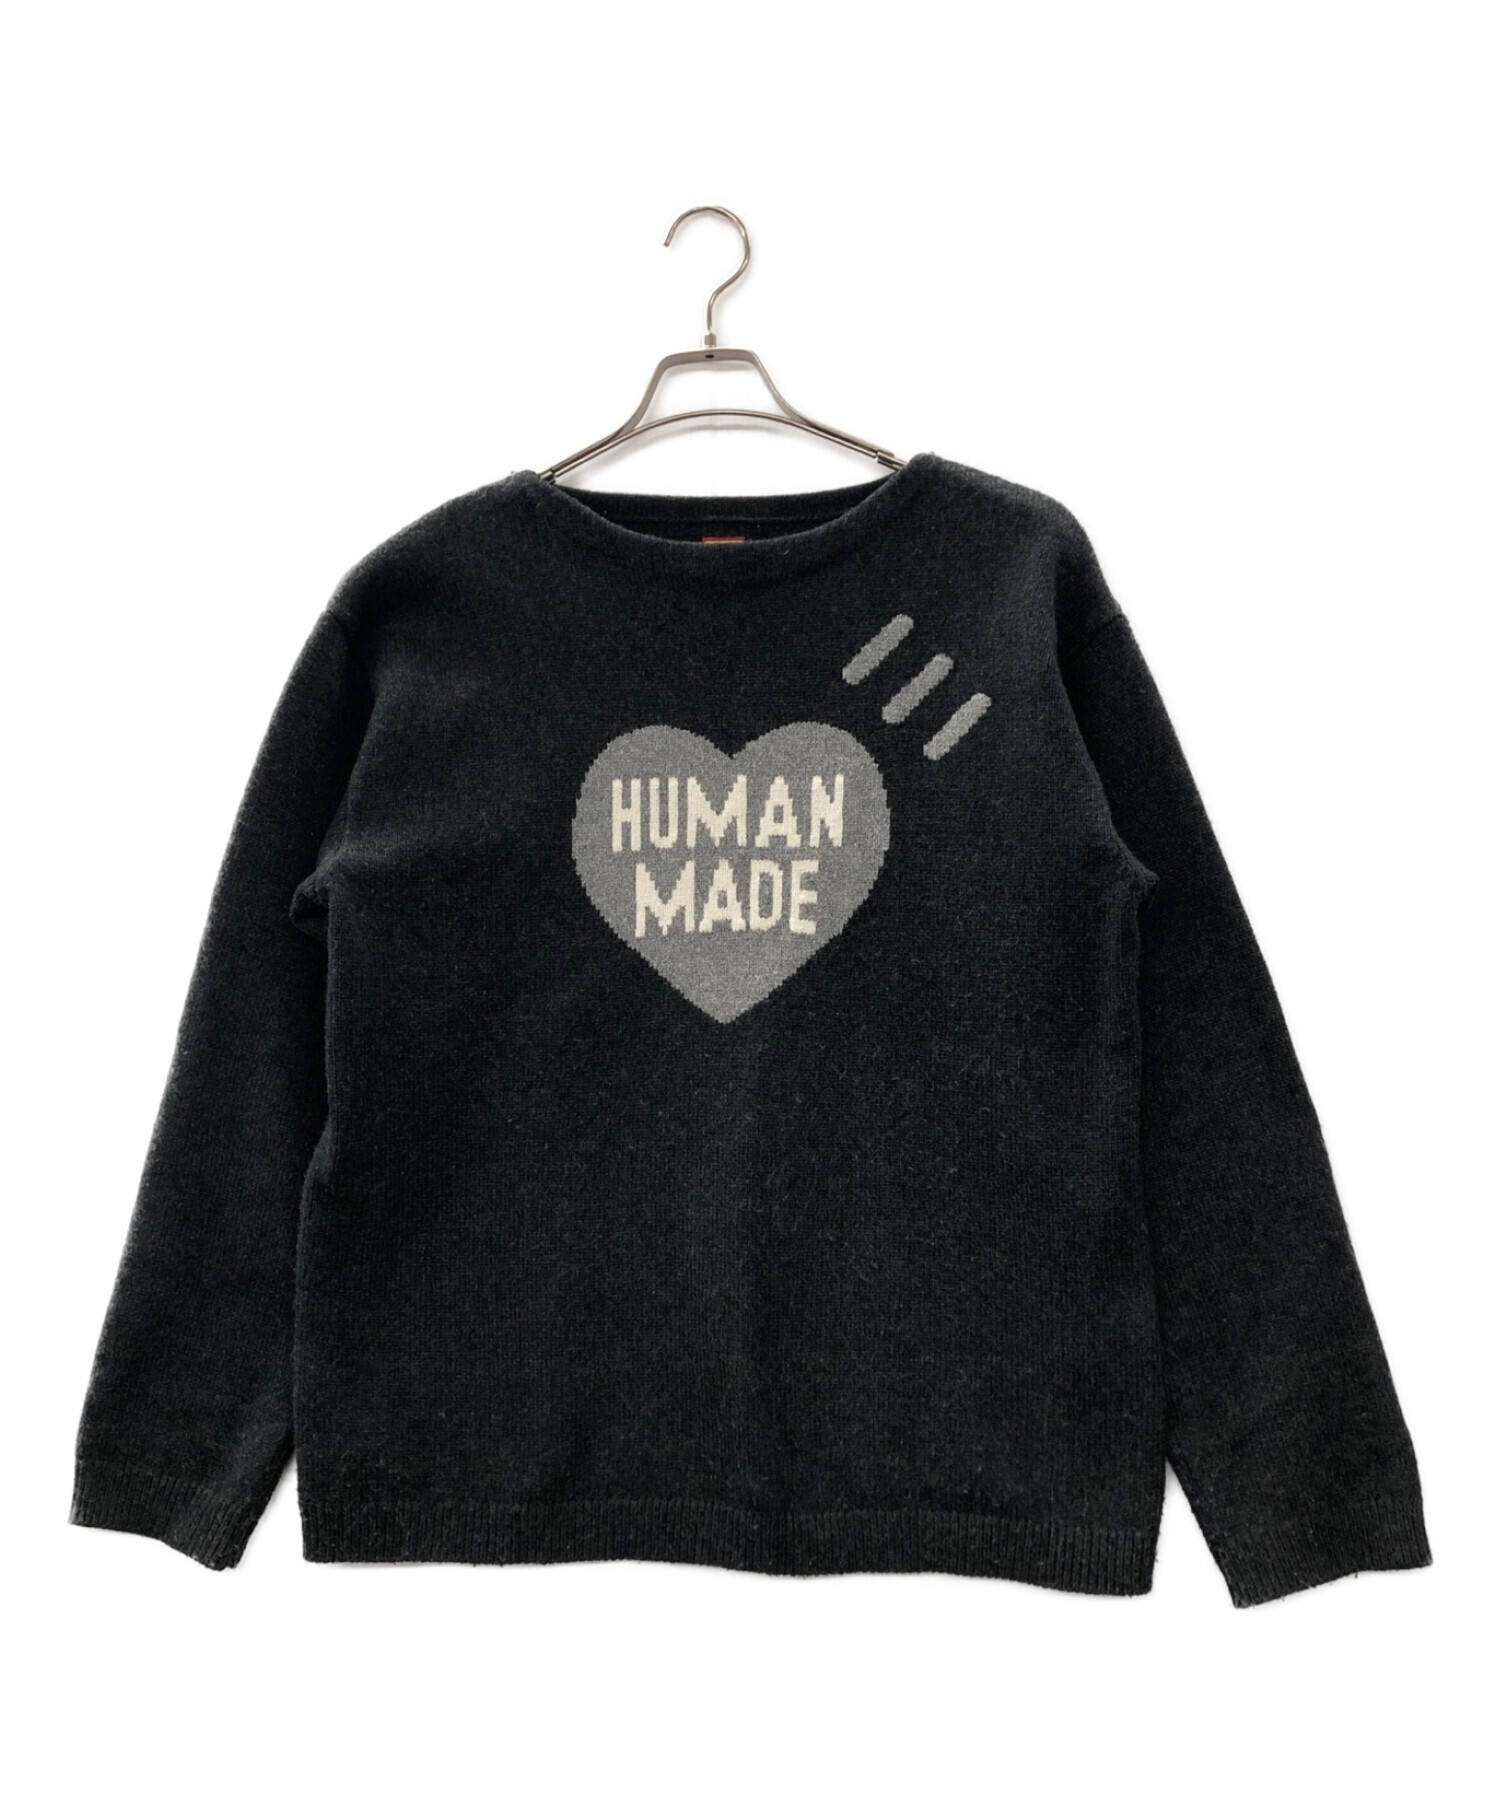 HUMAN MADE (ヒューマンメイド) Heart Knit Sweater グレー サイズ:L